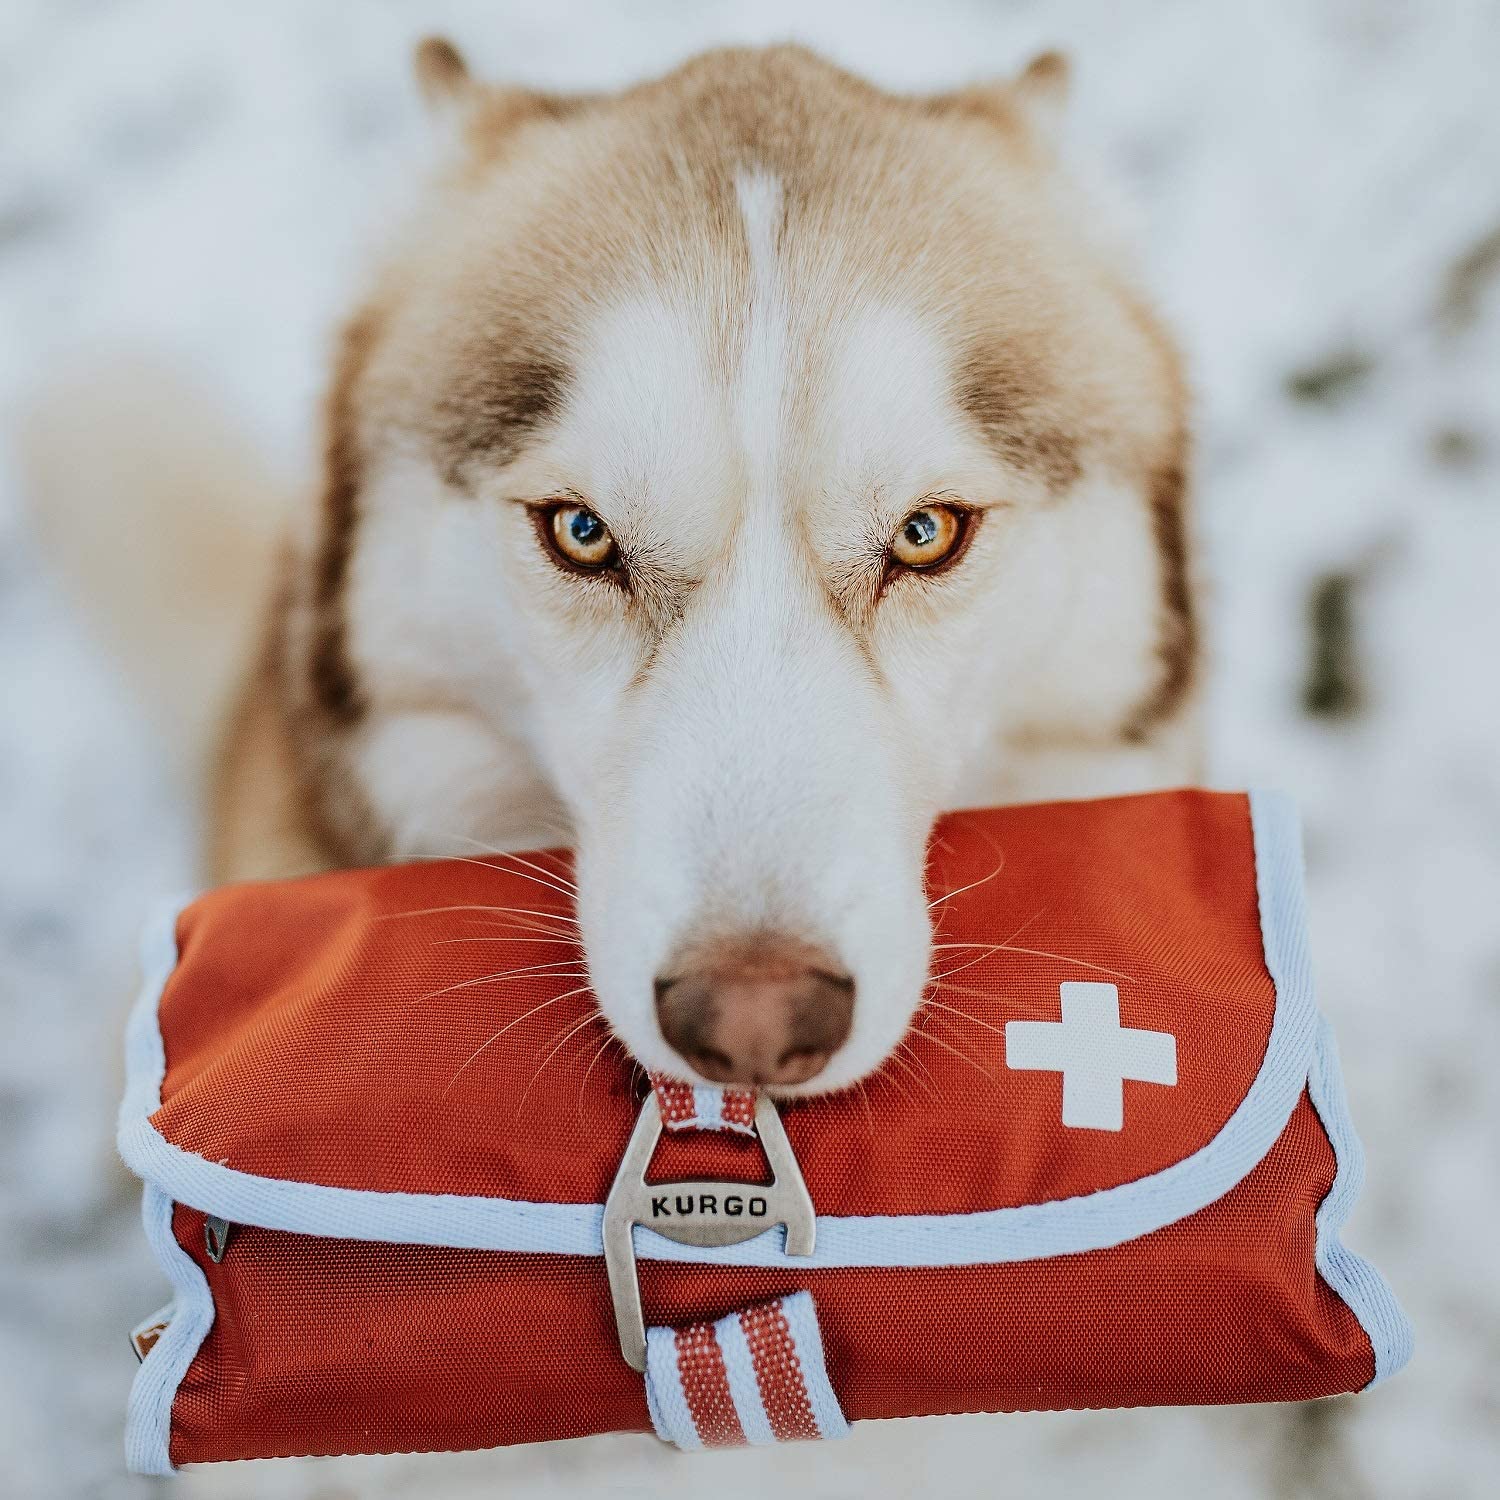 Kurgo® étend sa gamme RSG avec un kit de premiers secours pour chien